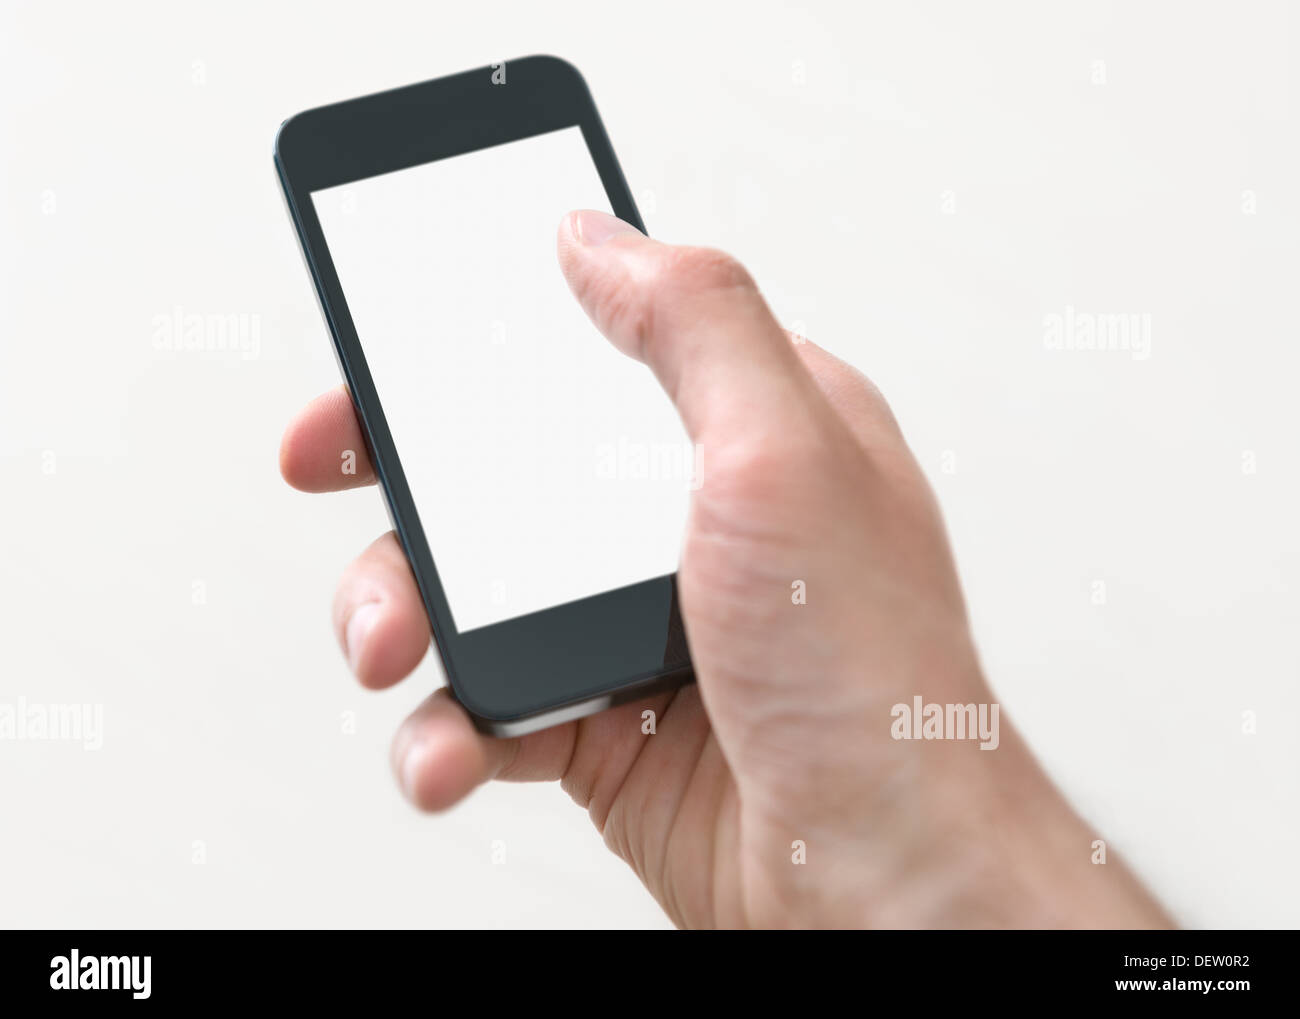 Homme main tenant et toucher sur mobile smartphone avec écran vide. Isolé sur fond blanc. Banque D'Images